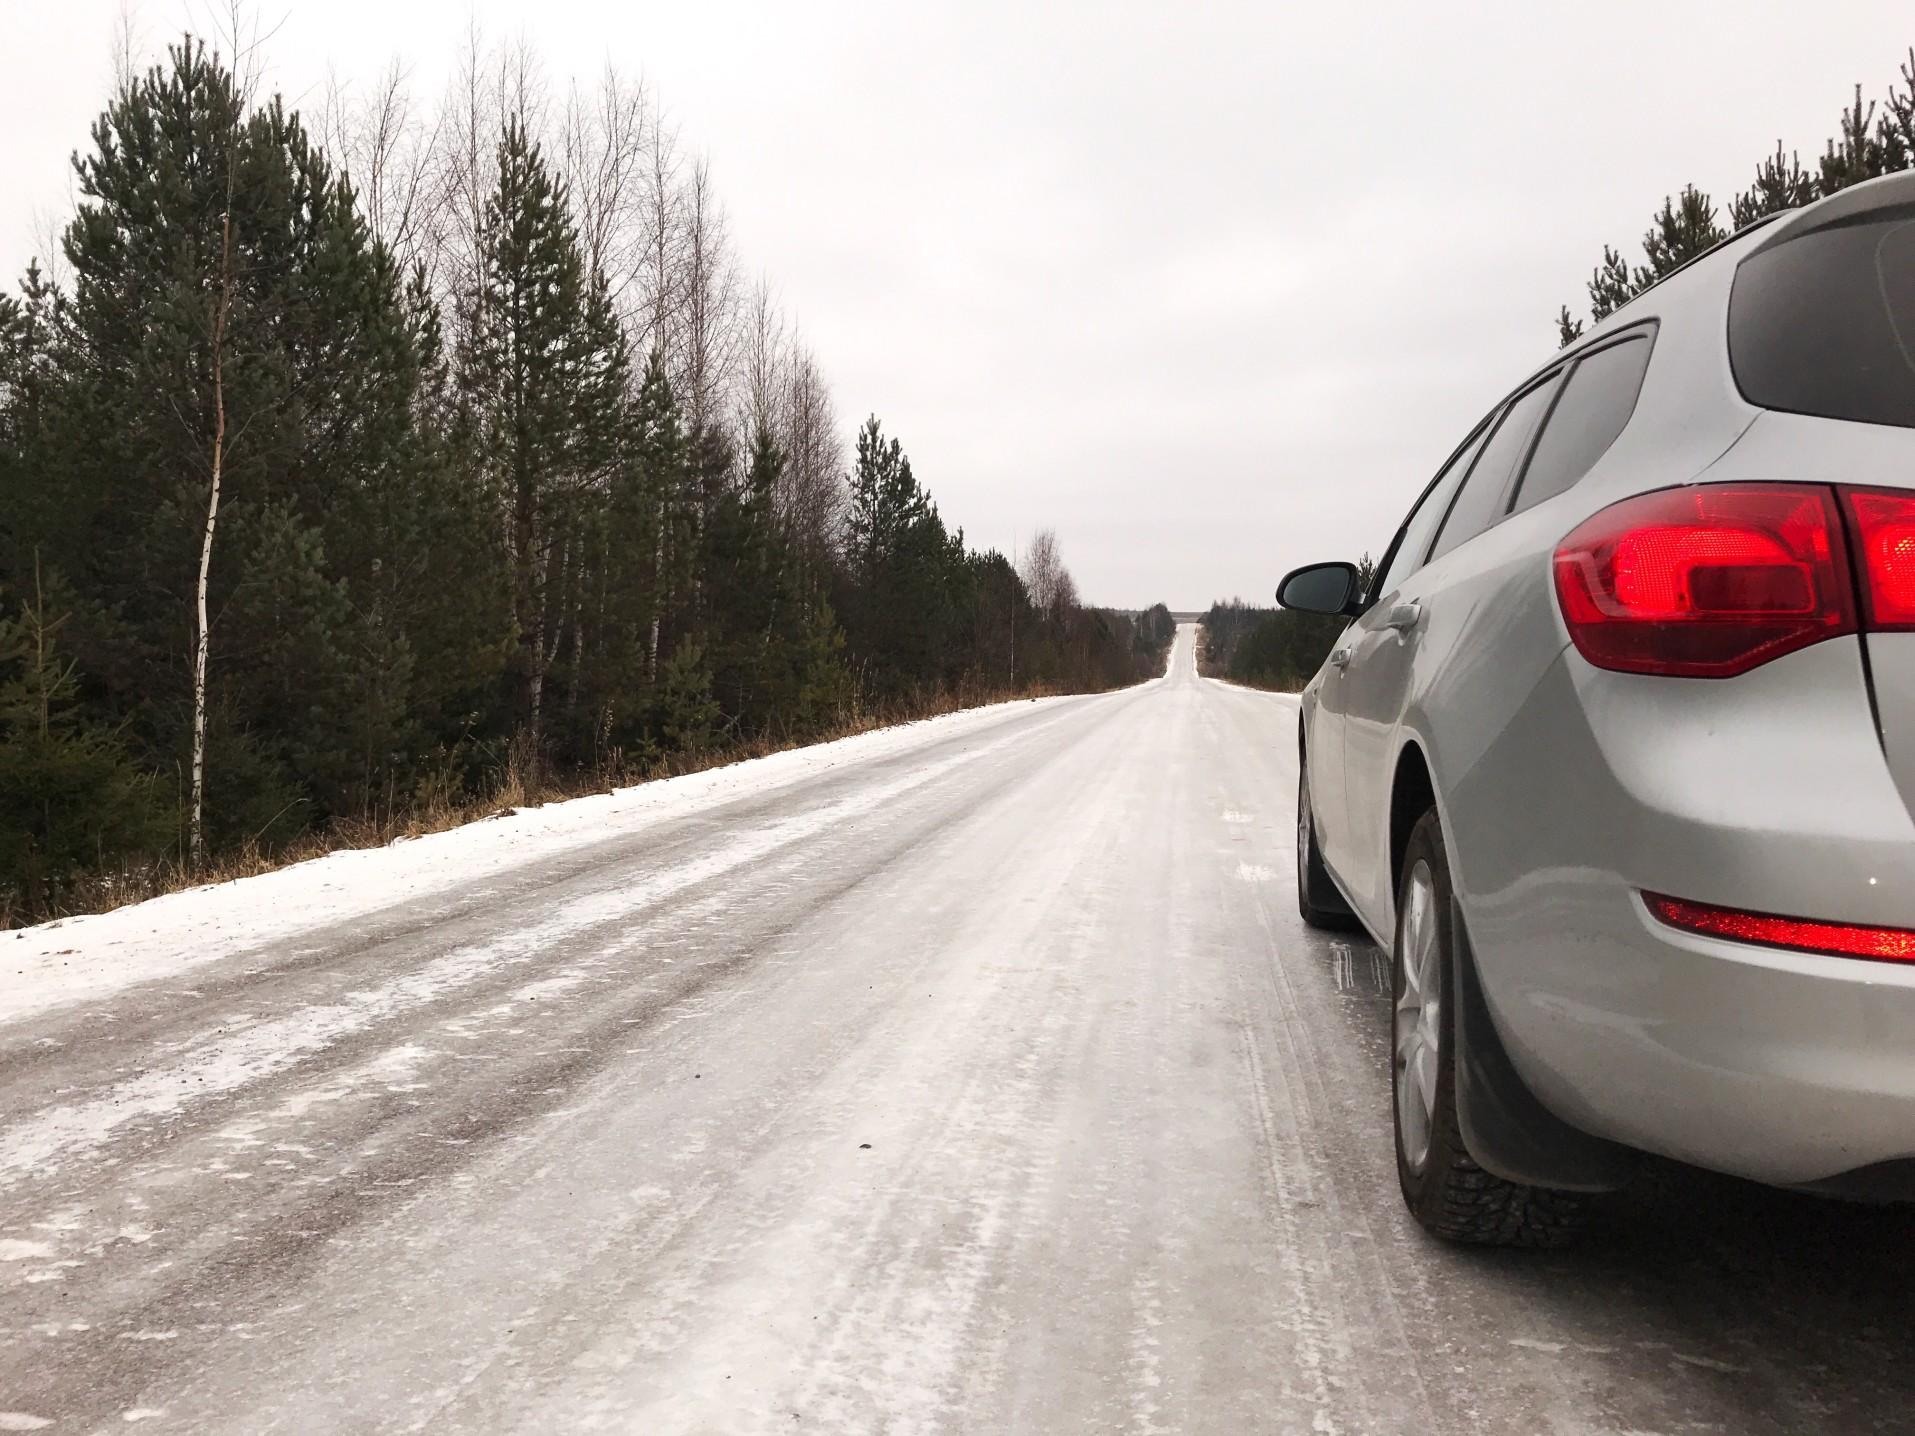 冬季开车,一些车辆时比别人更安全和舒适。